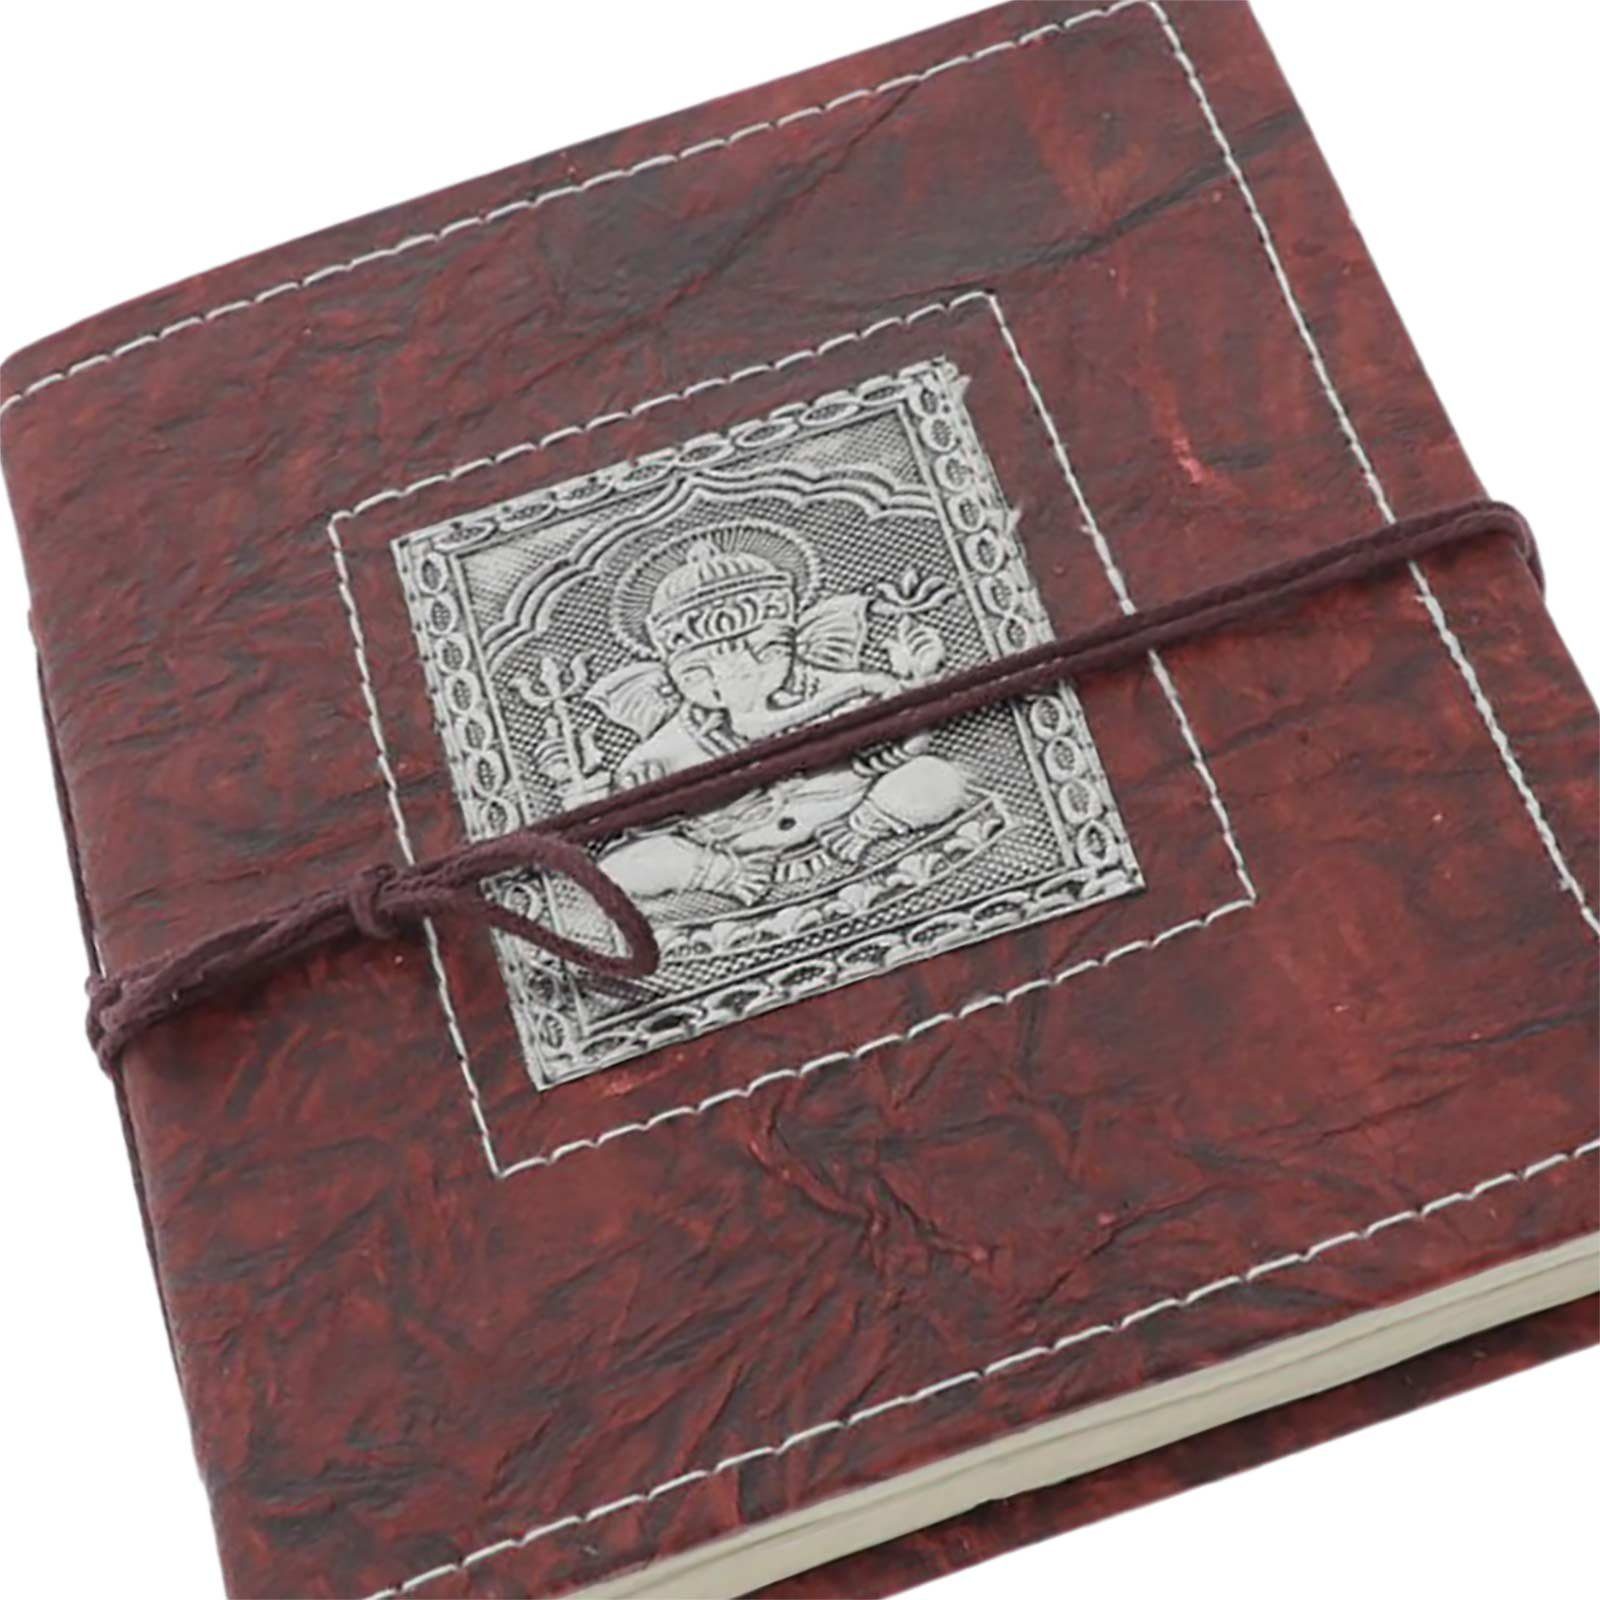 KUNST UND MAGIE Notizbuch Lord 20x15cm Poesiealbum handgefertigt Ganesha Notizbuch Tagebuch